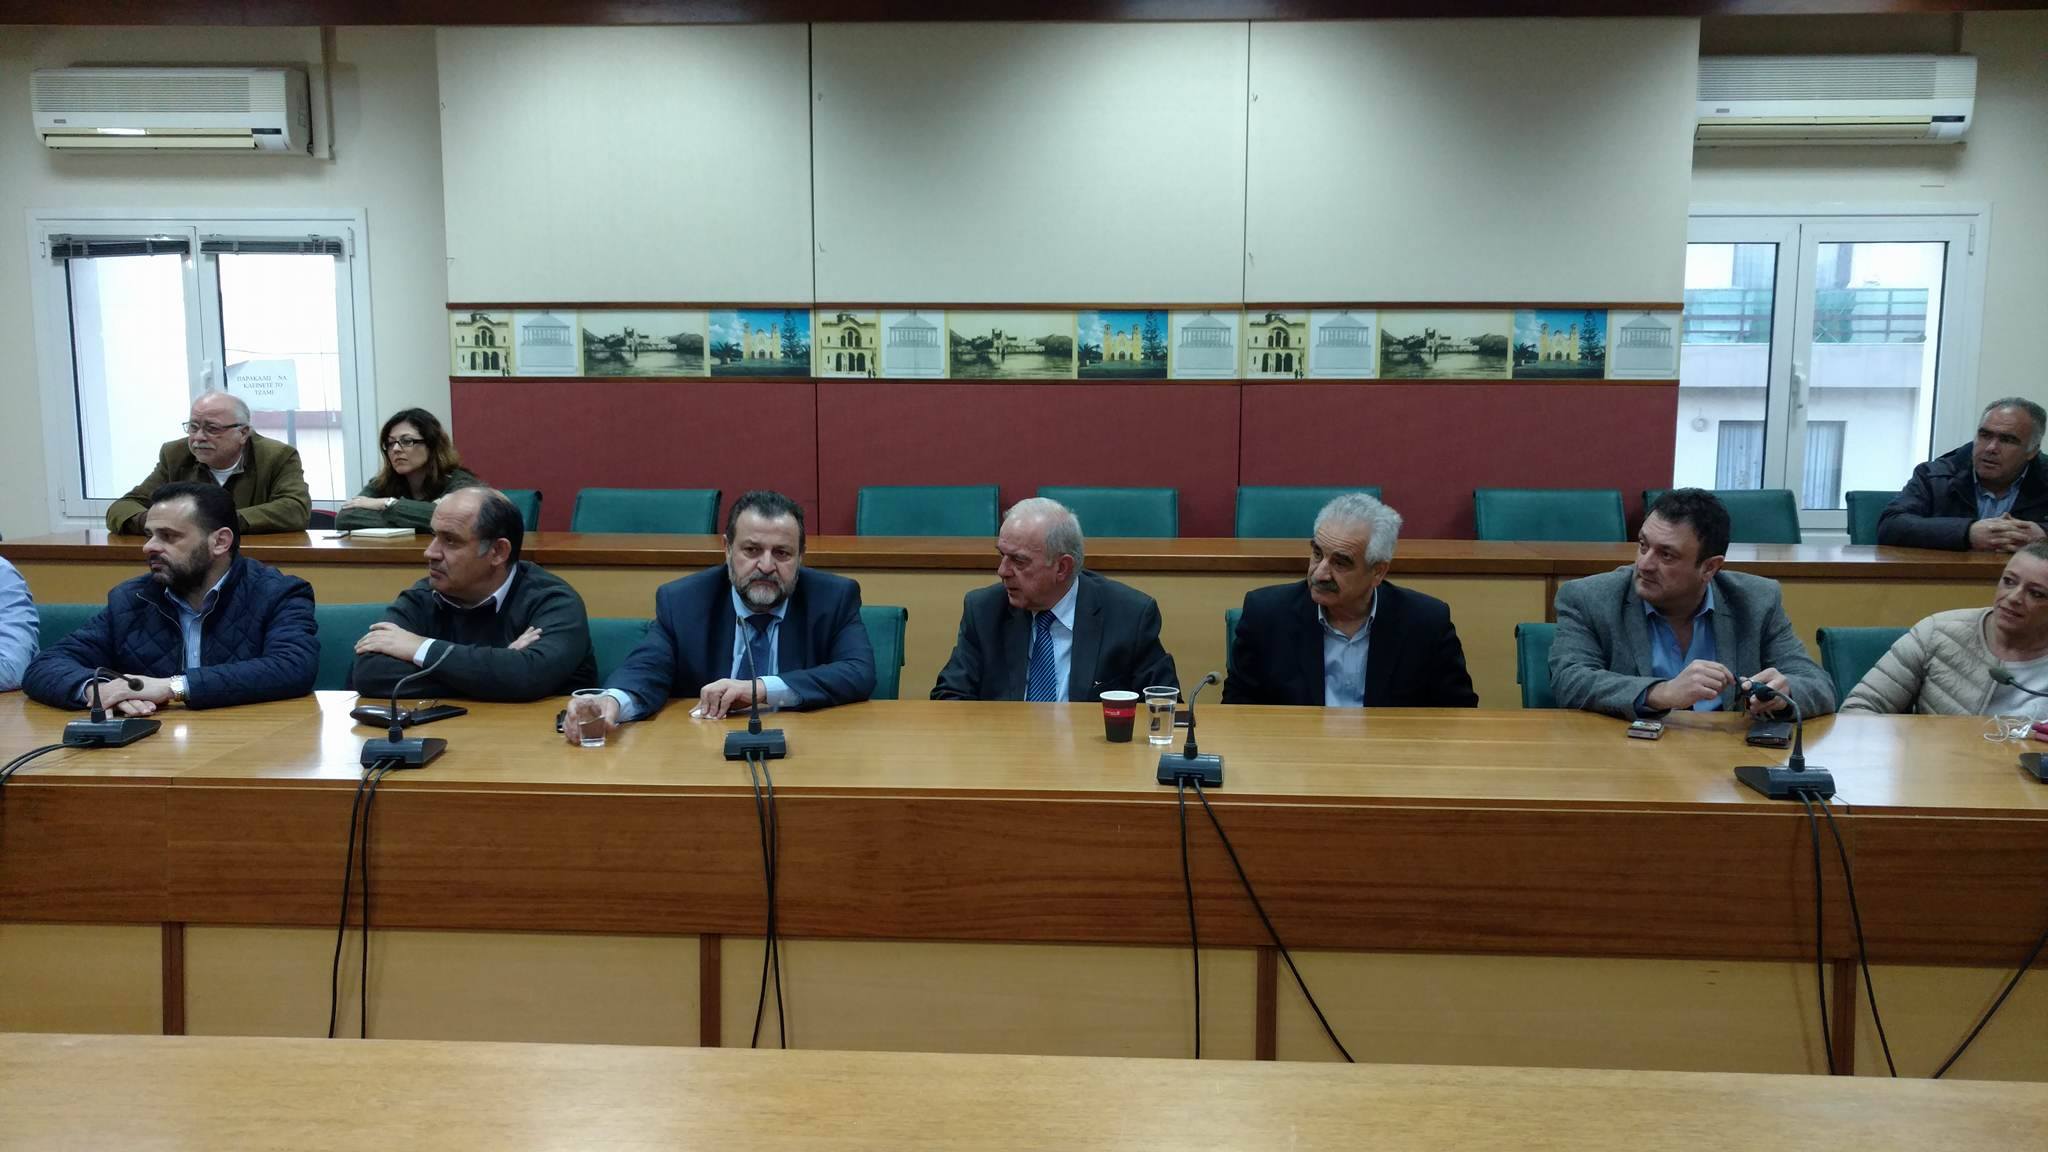 Αποφάσεις για το ΙΚΑ Ν. Αλικαρνασσού σε σύσκεψη στον Δήμο Ηρακλείου